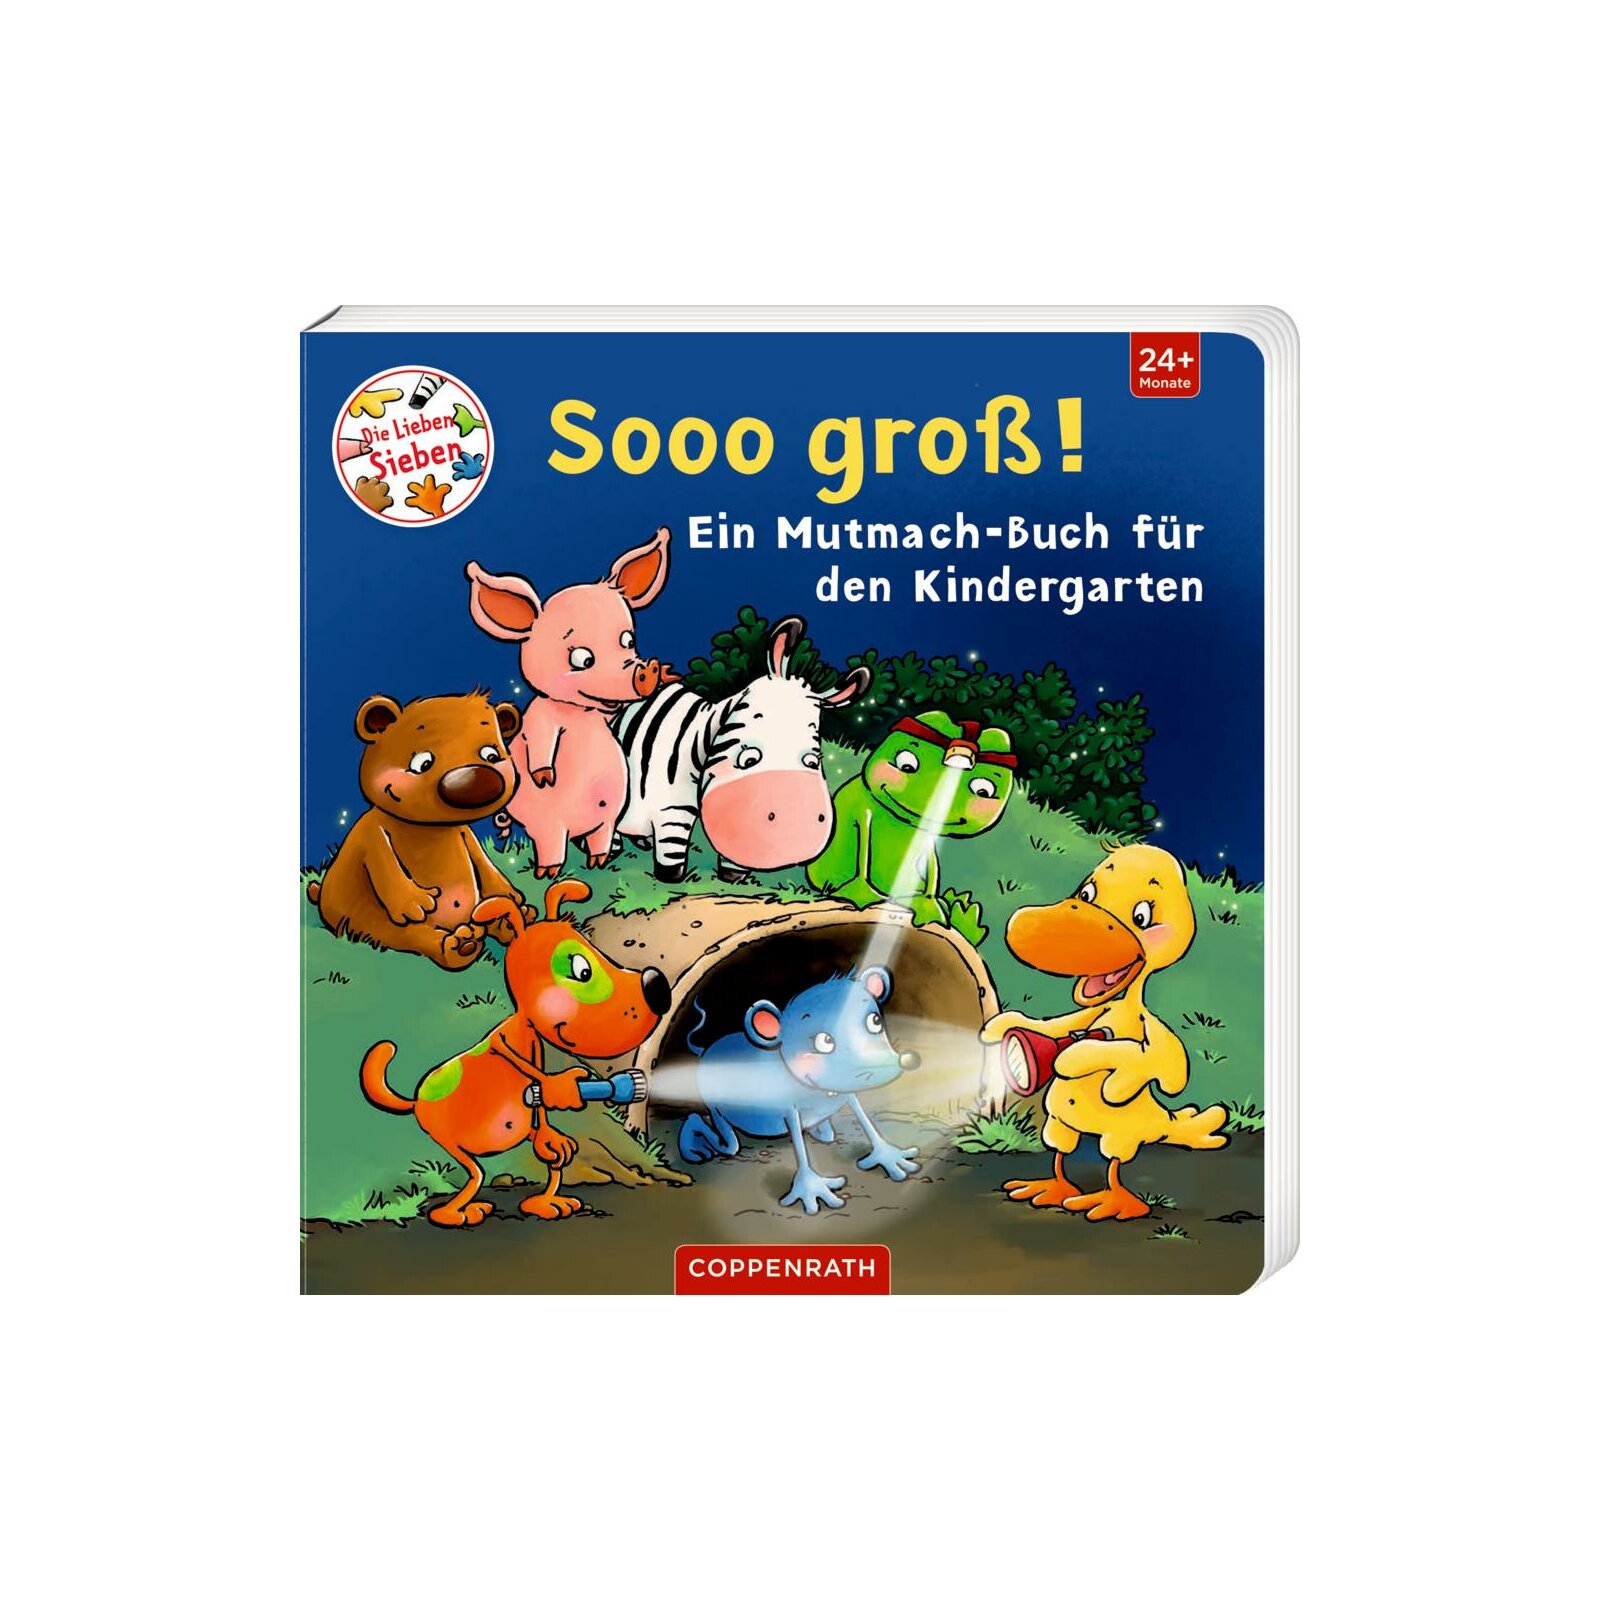 Coppenrath - Die Lieben Sieben - Sooo groß! Ein Mutmach-Buch für den Kindergarten